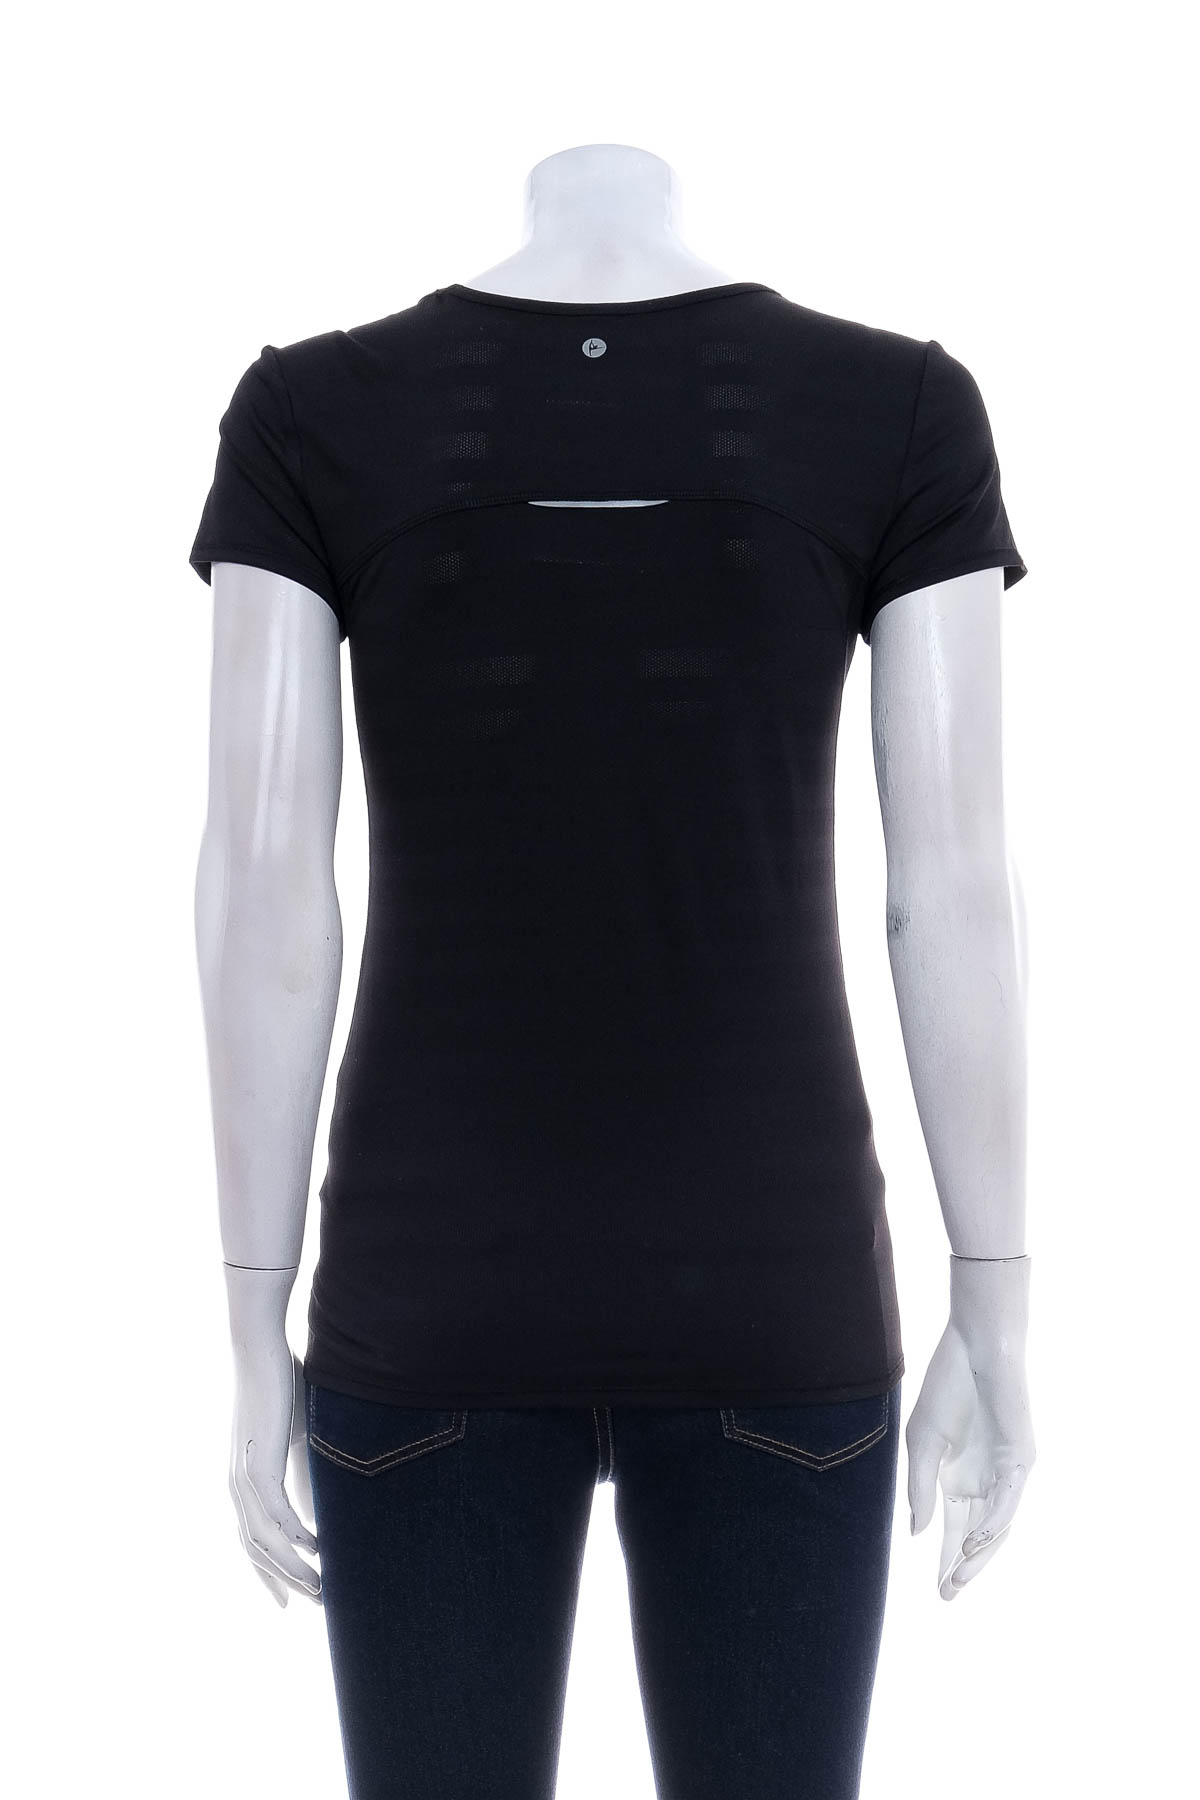 Women's t-shirt - 90 DEGREE BY REFLEX - 1